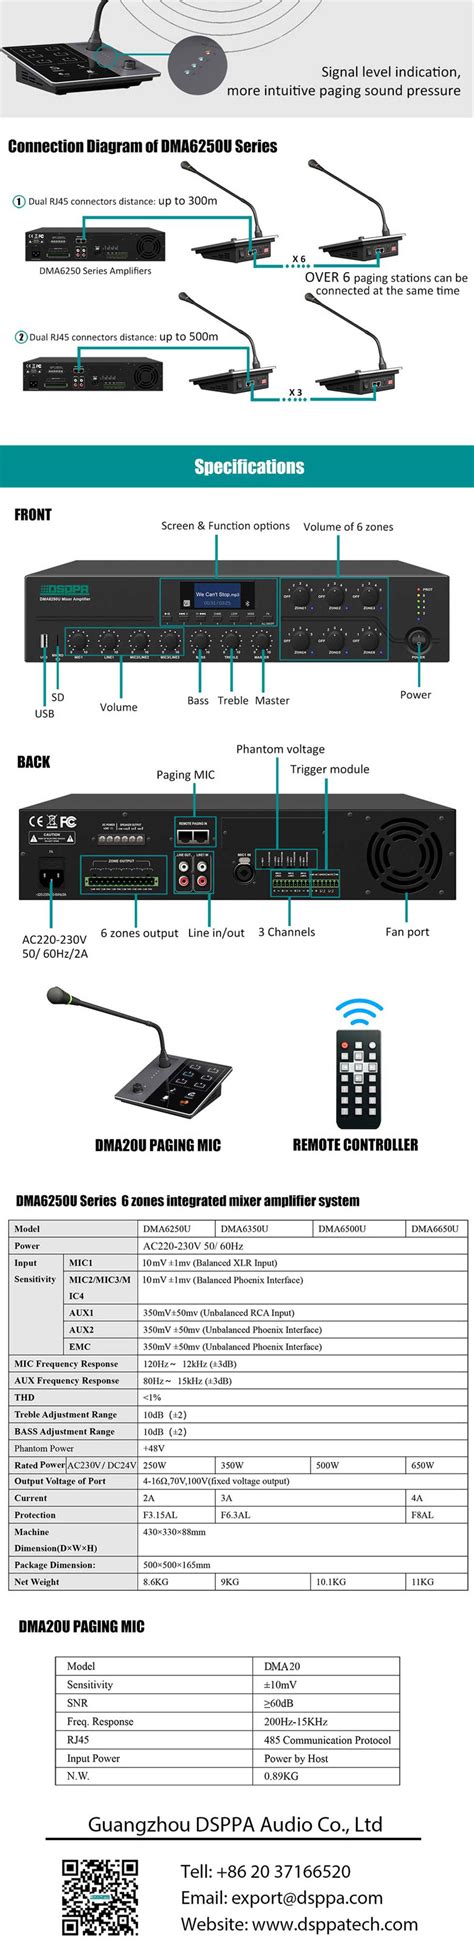 Dma6500u 500w 6 Zones Digital Mixer Amplifier With Remote Paging